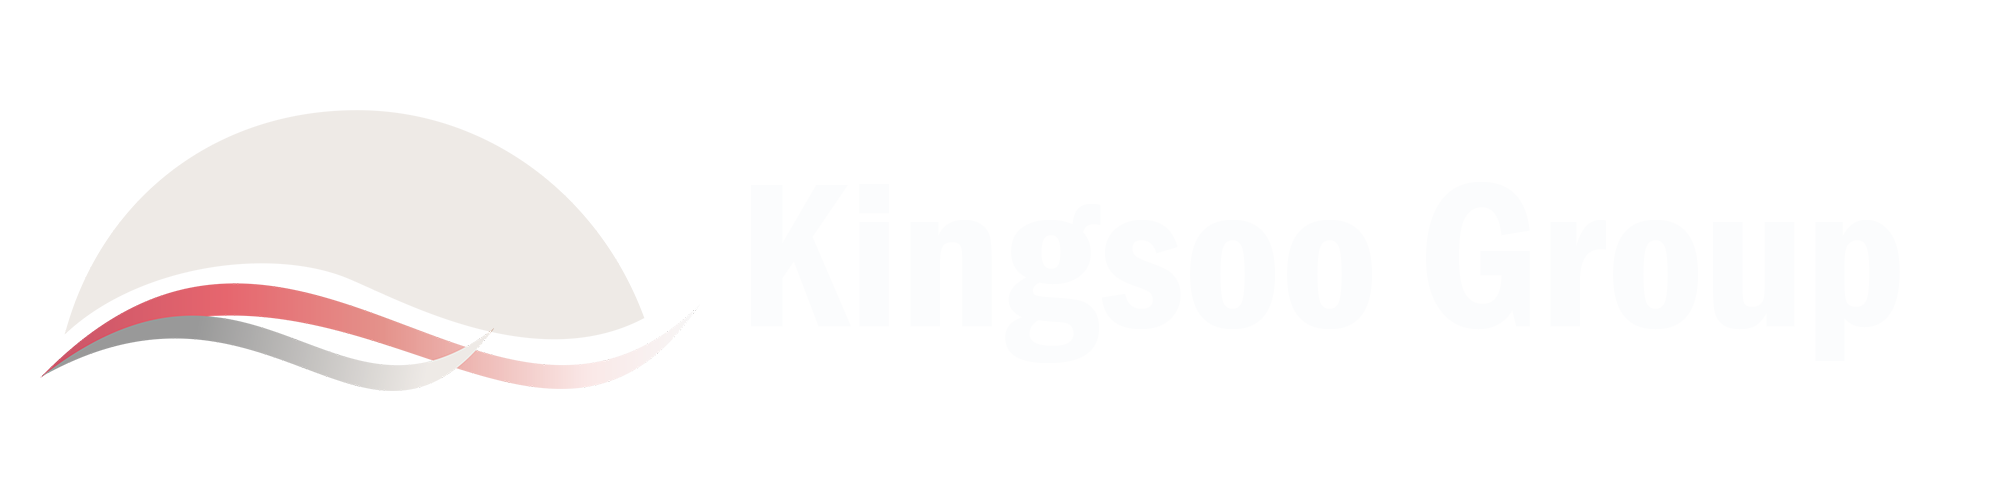 Kingsoo Group